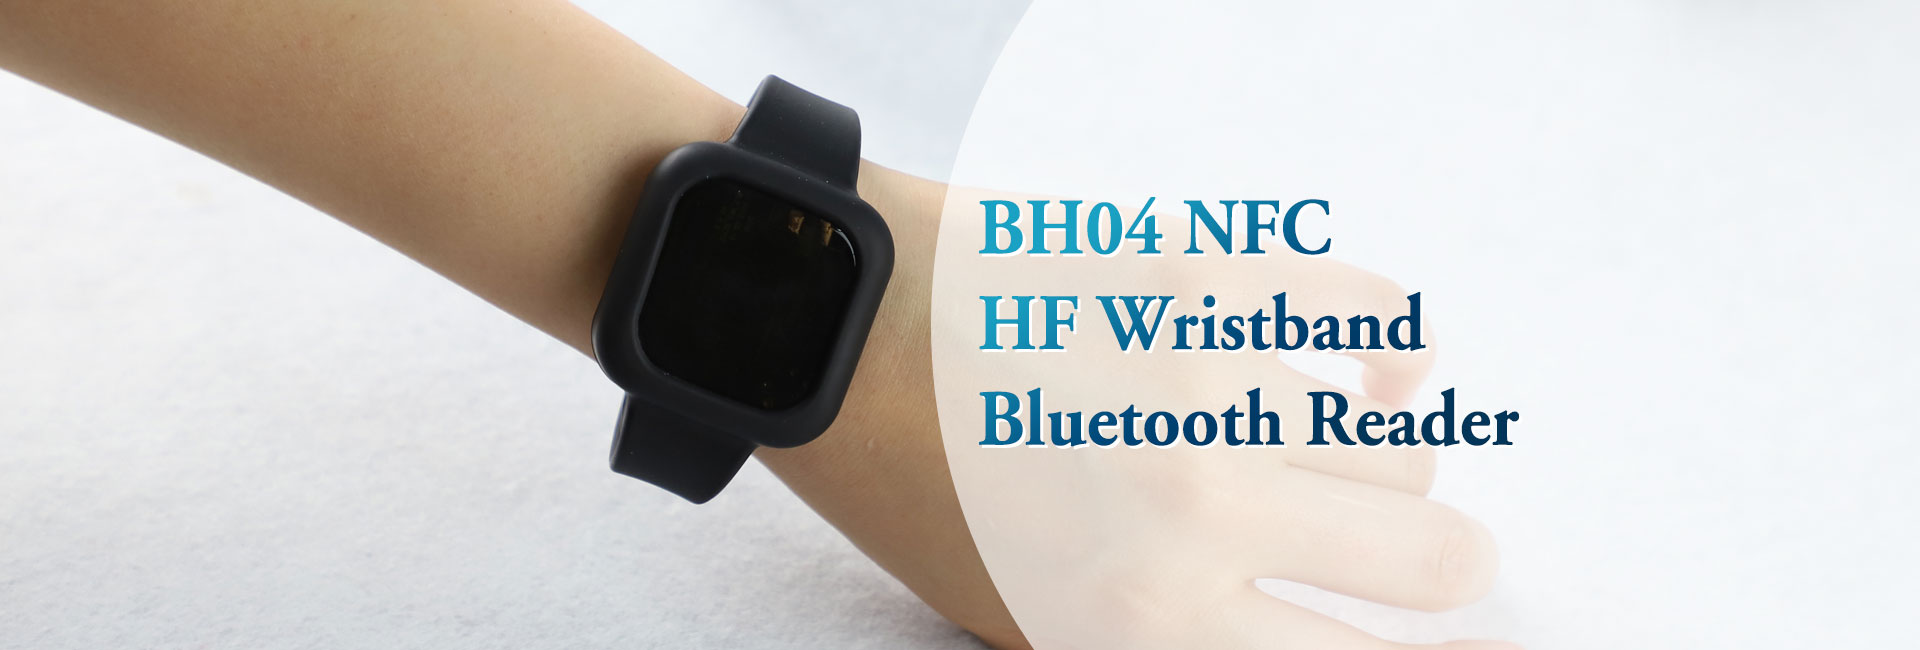 BH04 NFC高频腕带蓝牙阅读器gydF4y2Ba